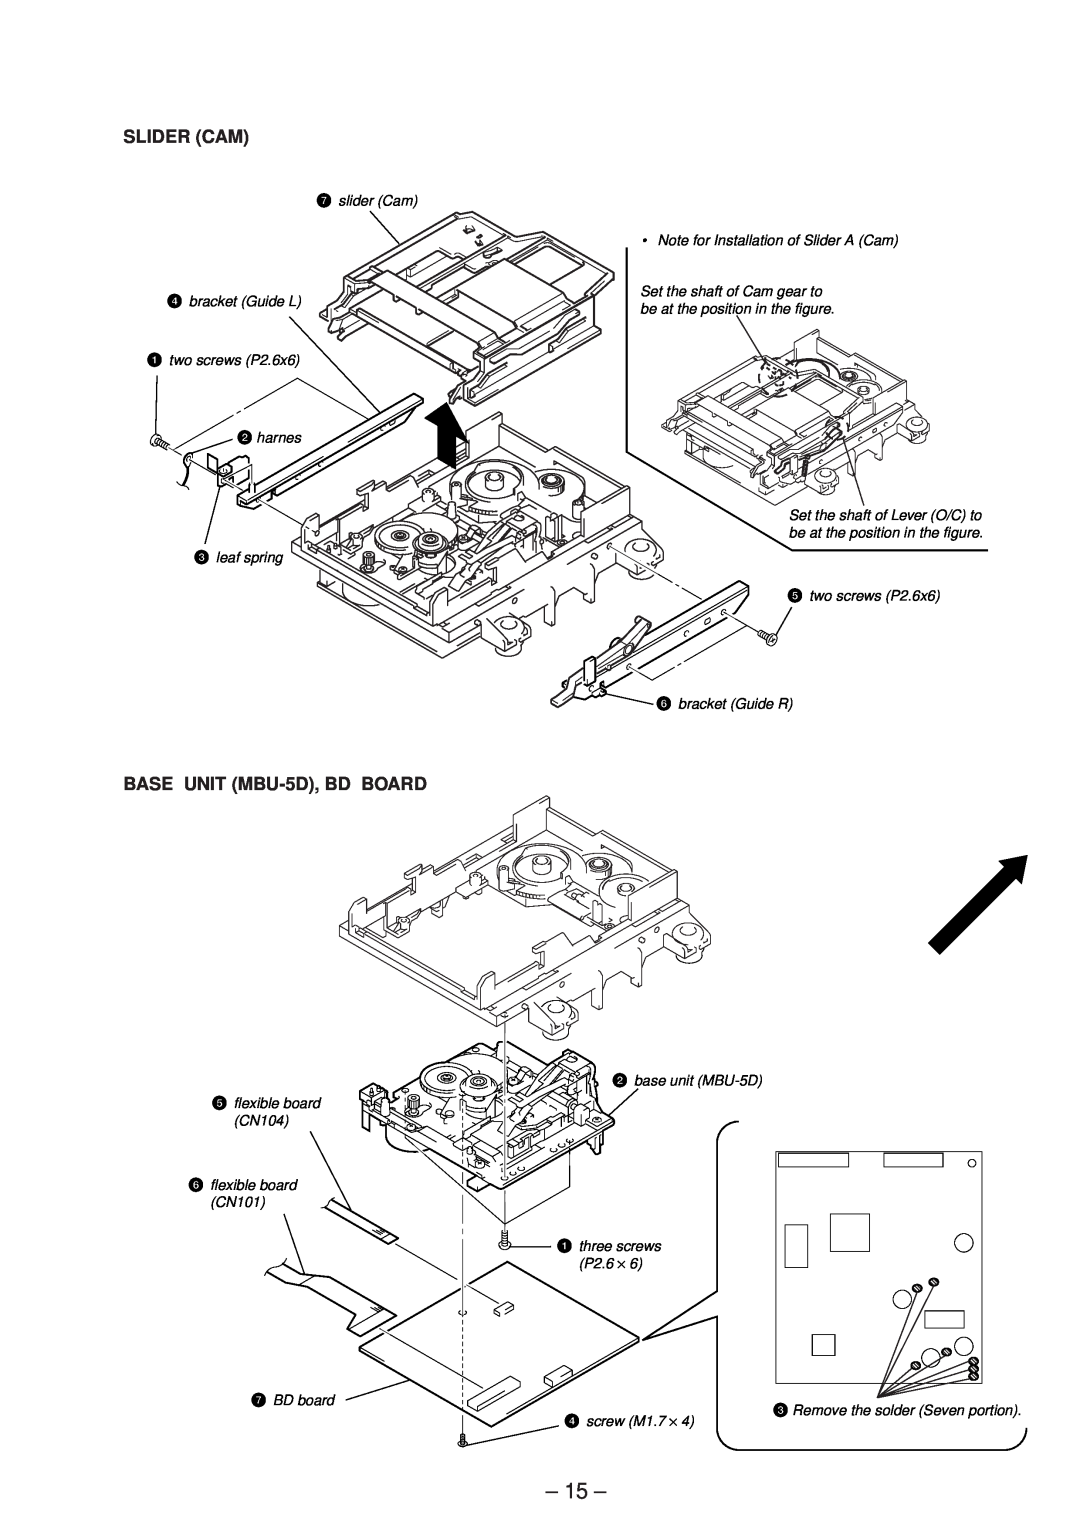 Sony MDS-JE630 service manual Slider Cam, BASE UNIT MBU-5D,BD BOARD 